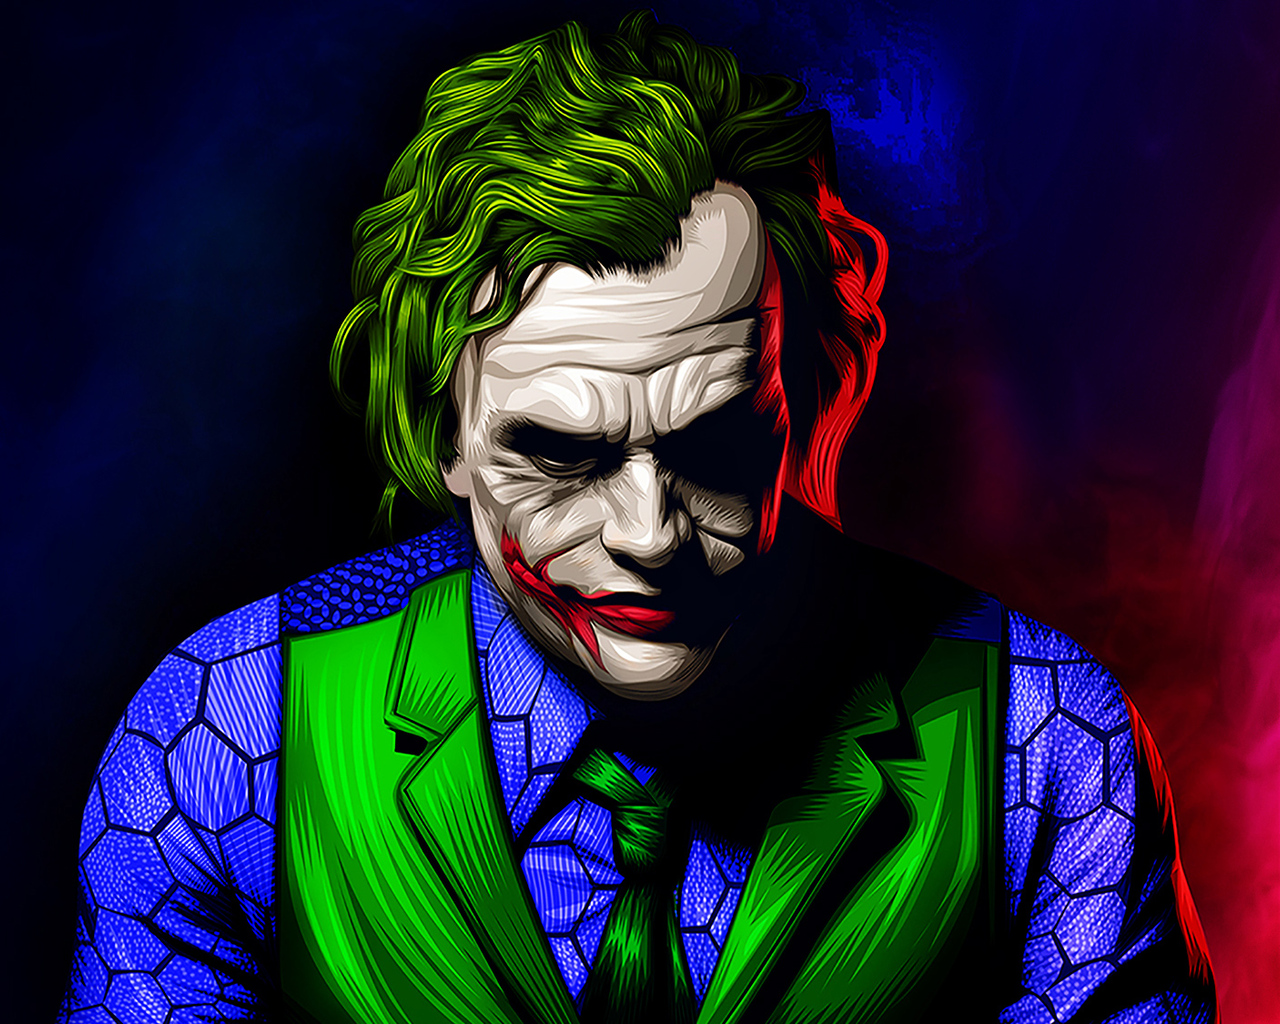 1280x1024 Art Of Joker New 1280x1024 Resolution HD 4k Wallpapers ...